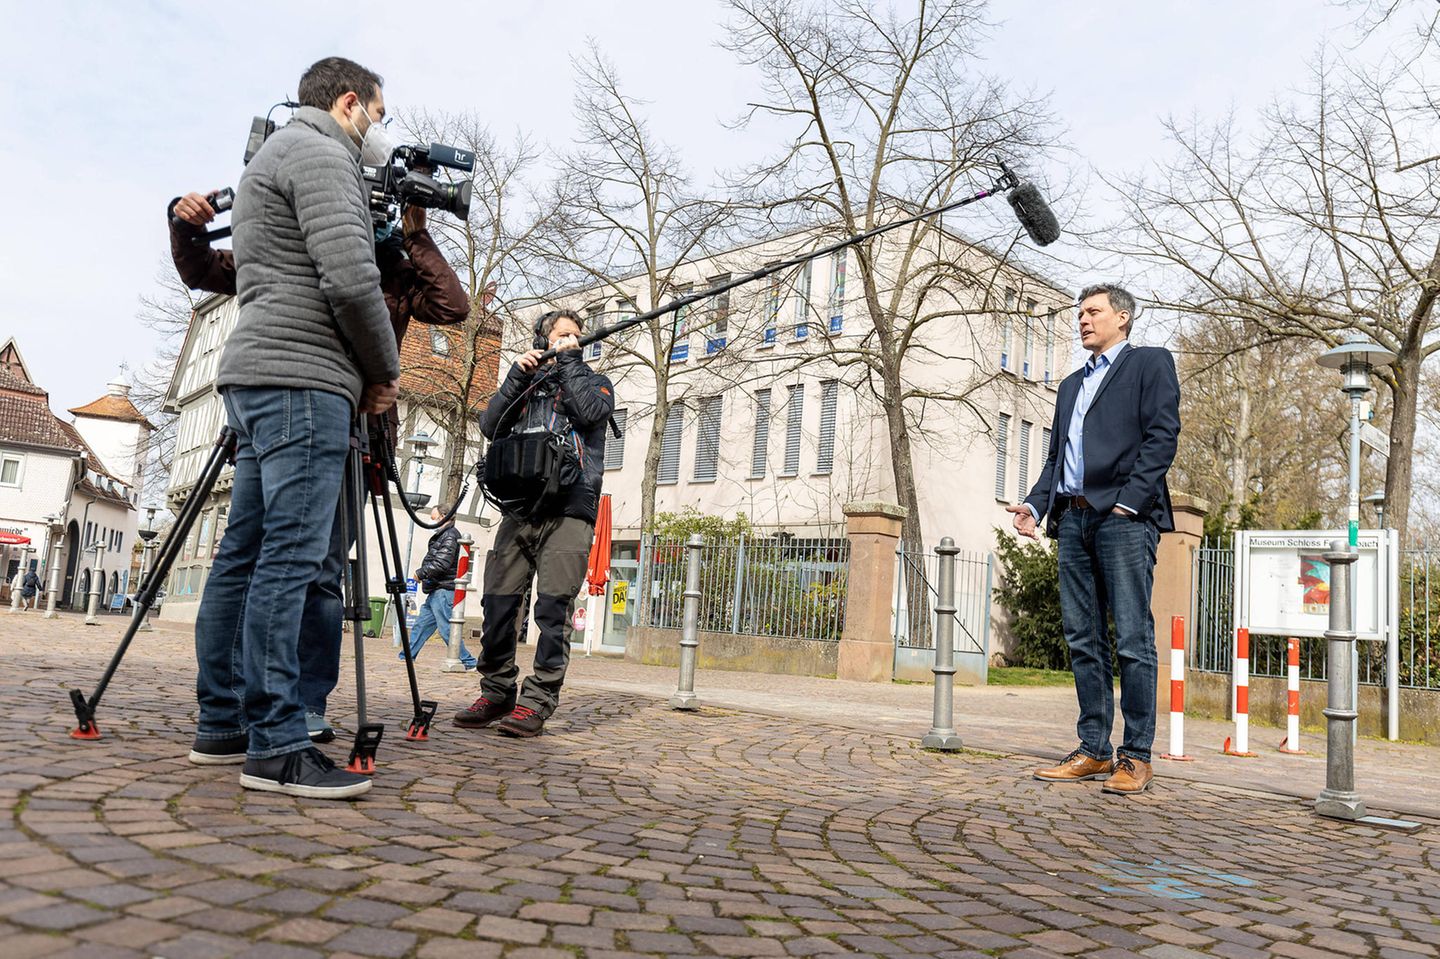 Dieburger Bürgermeister Frank Haus (parteilos) gibt den Hessischen Rundfunk ein Interview